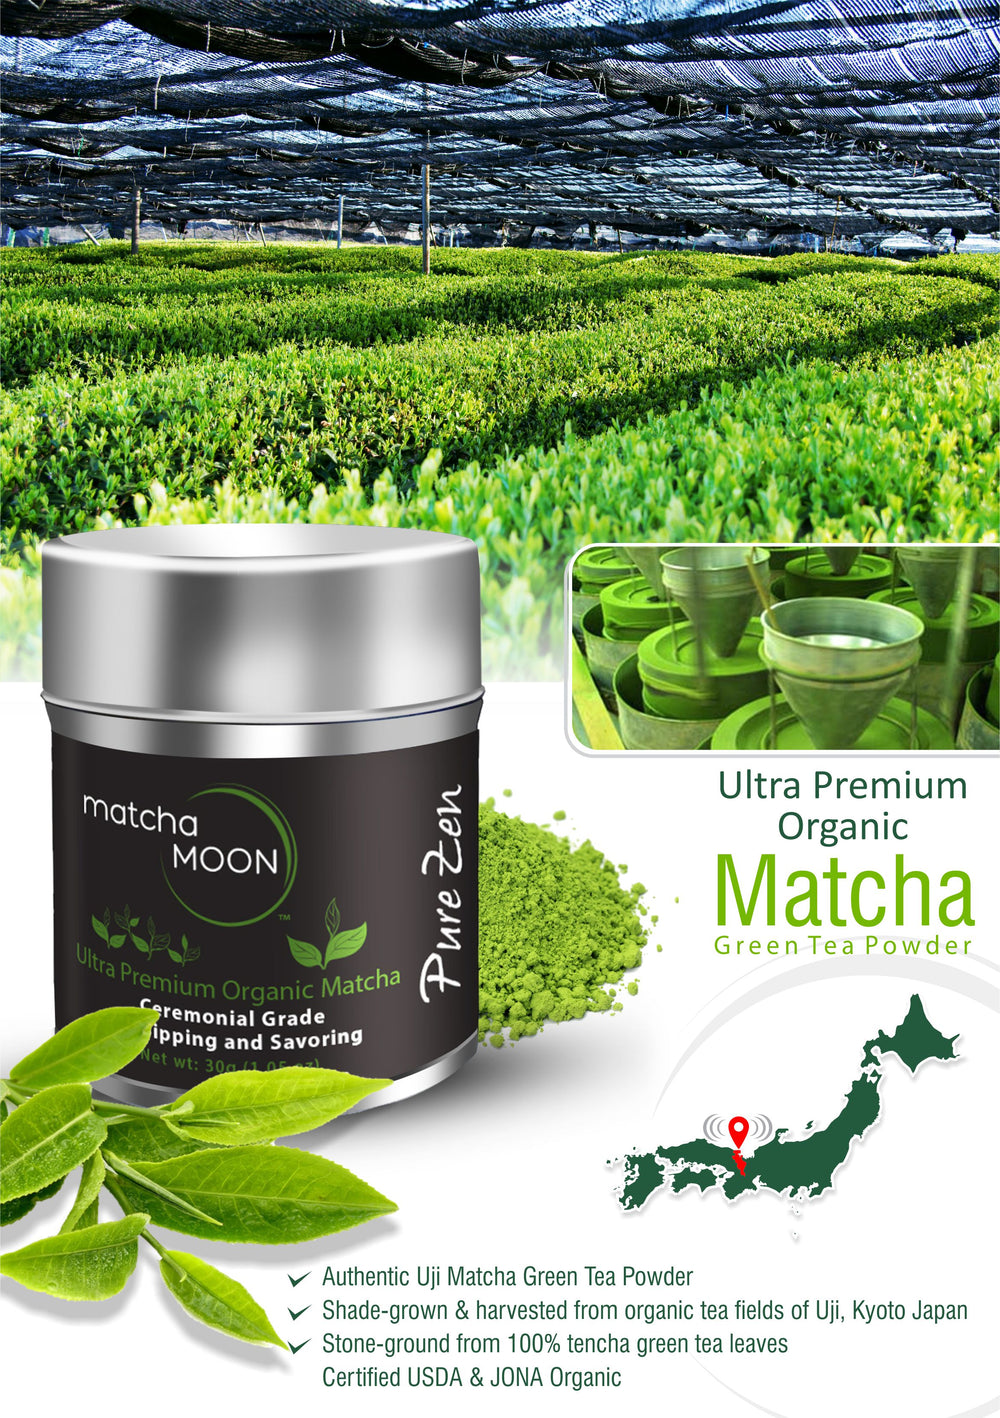 Benefits of Matcha Moon Pure Zen 